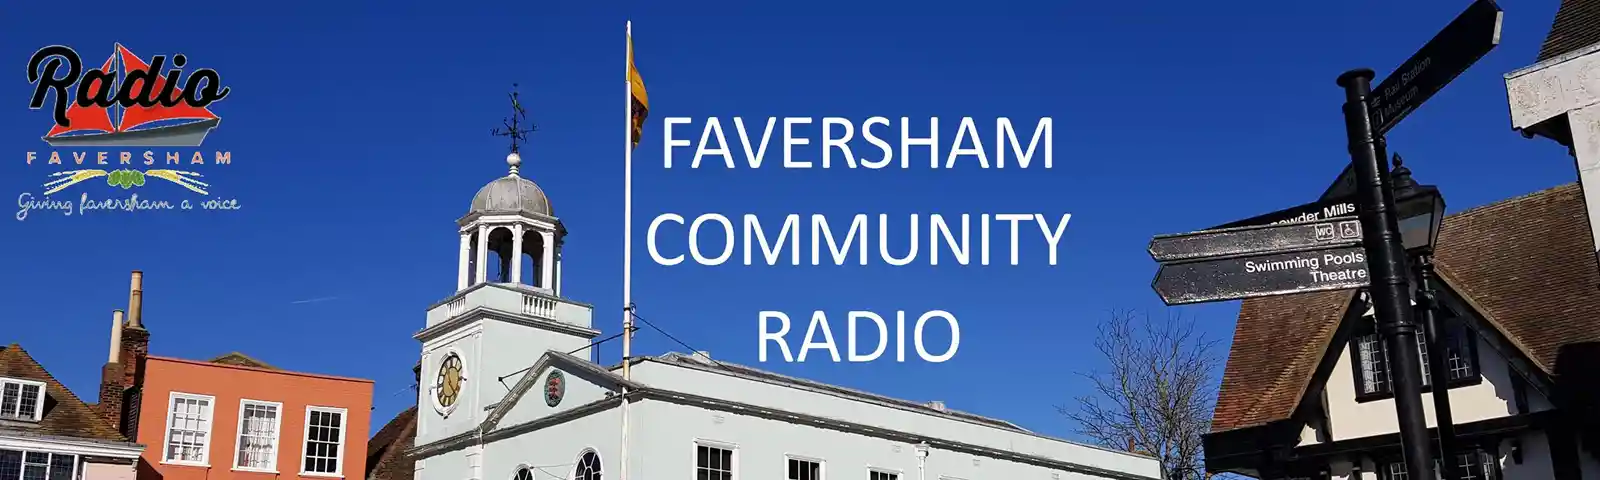 Radio Faversham Facebook Banner Image.jpg